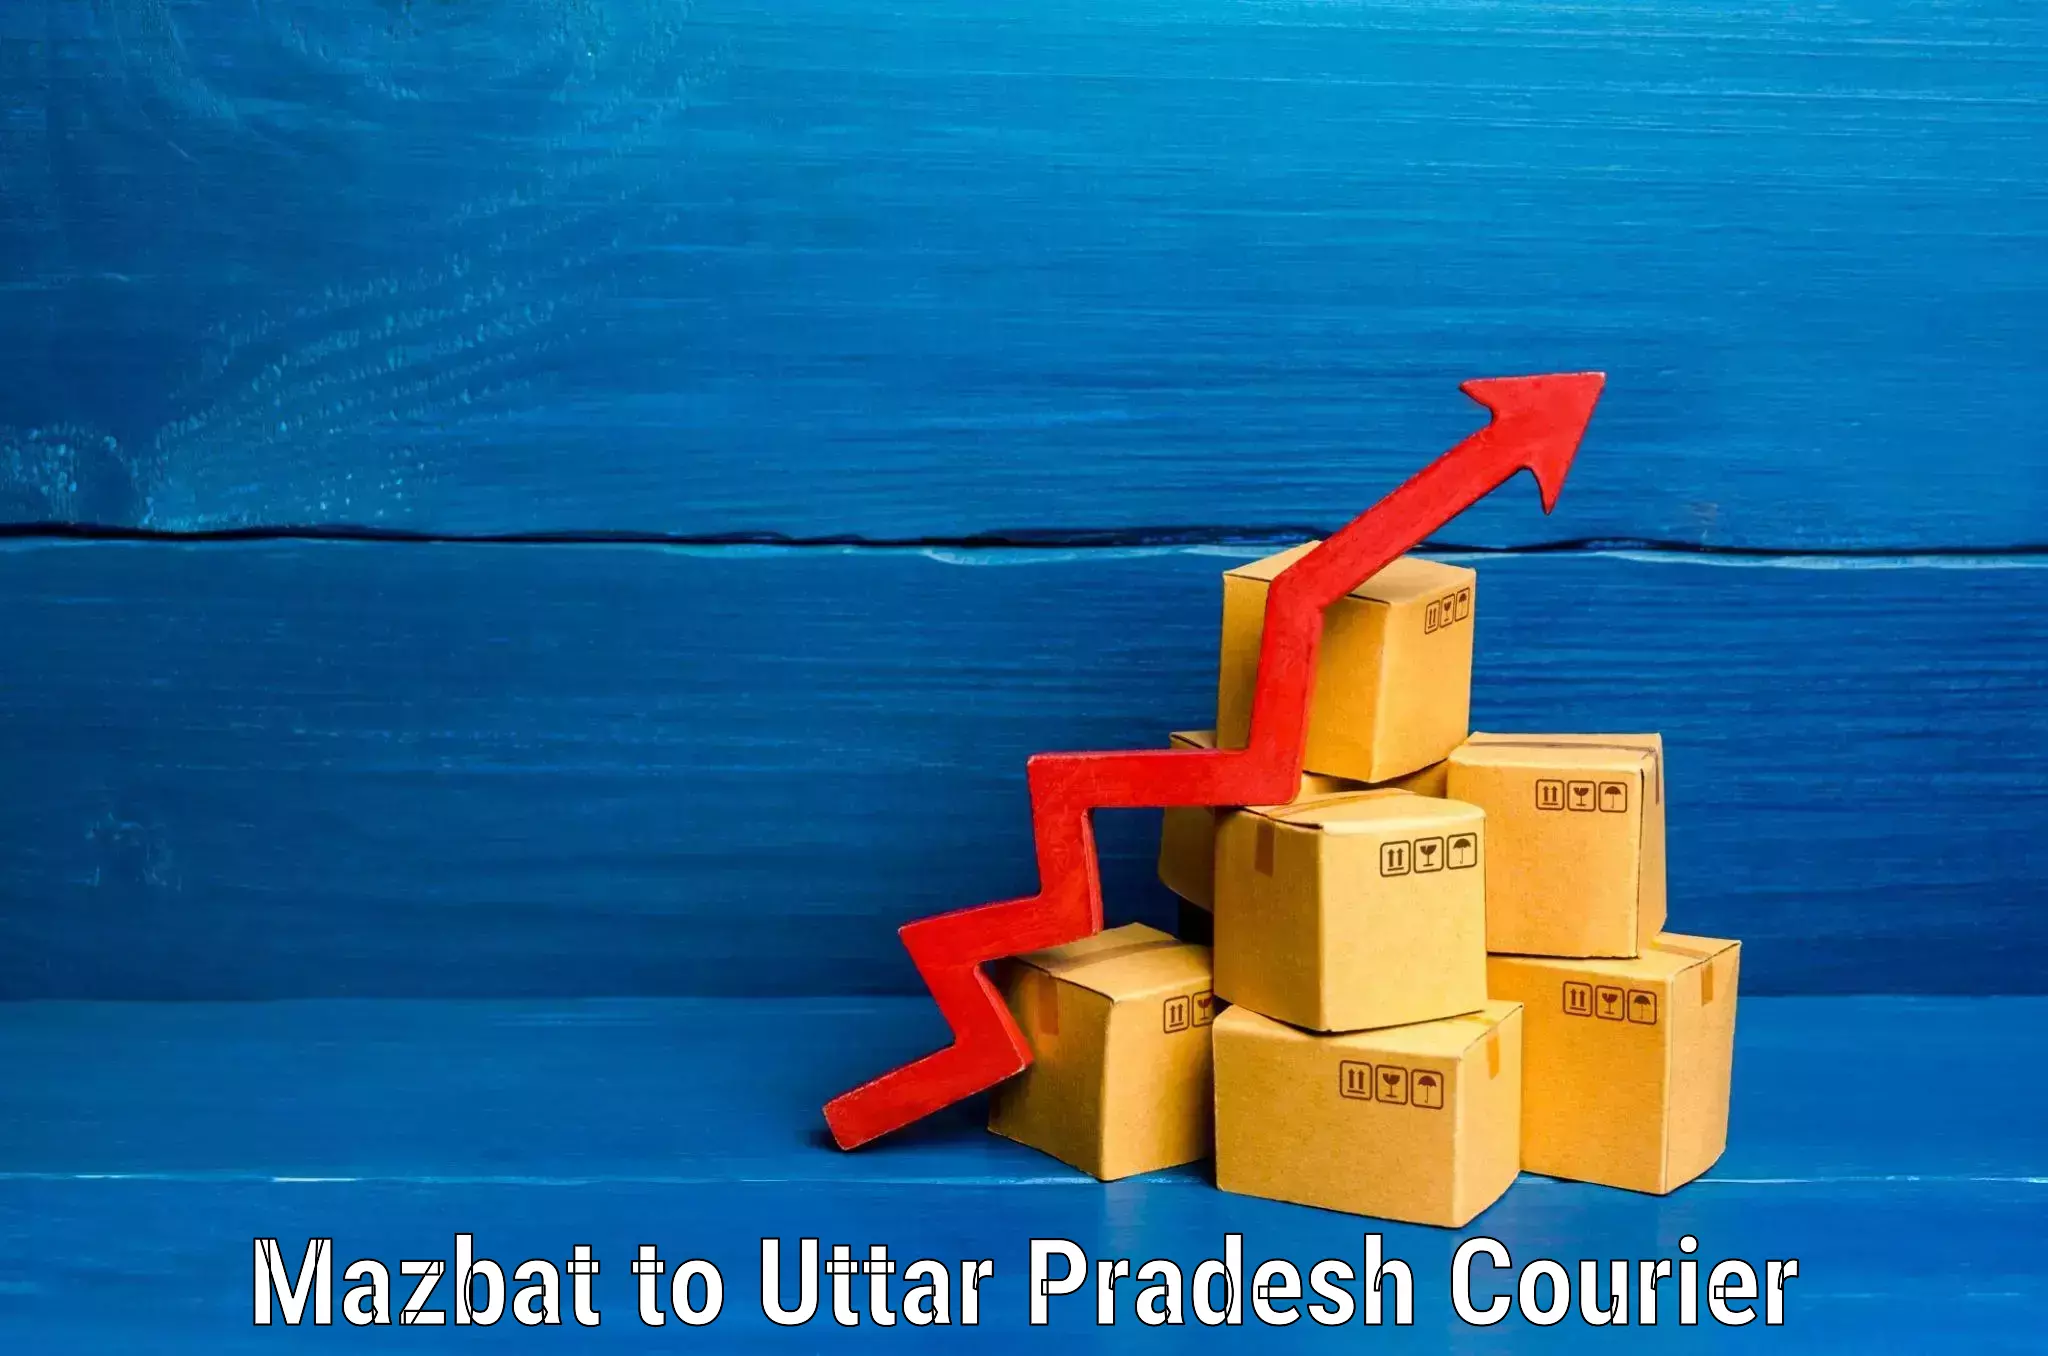 Luggage transport company Mazbat to Uttar Pradesh